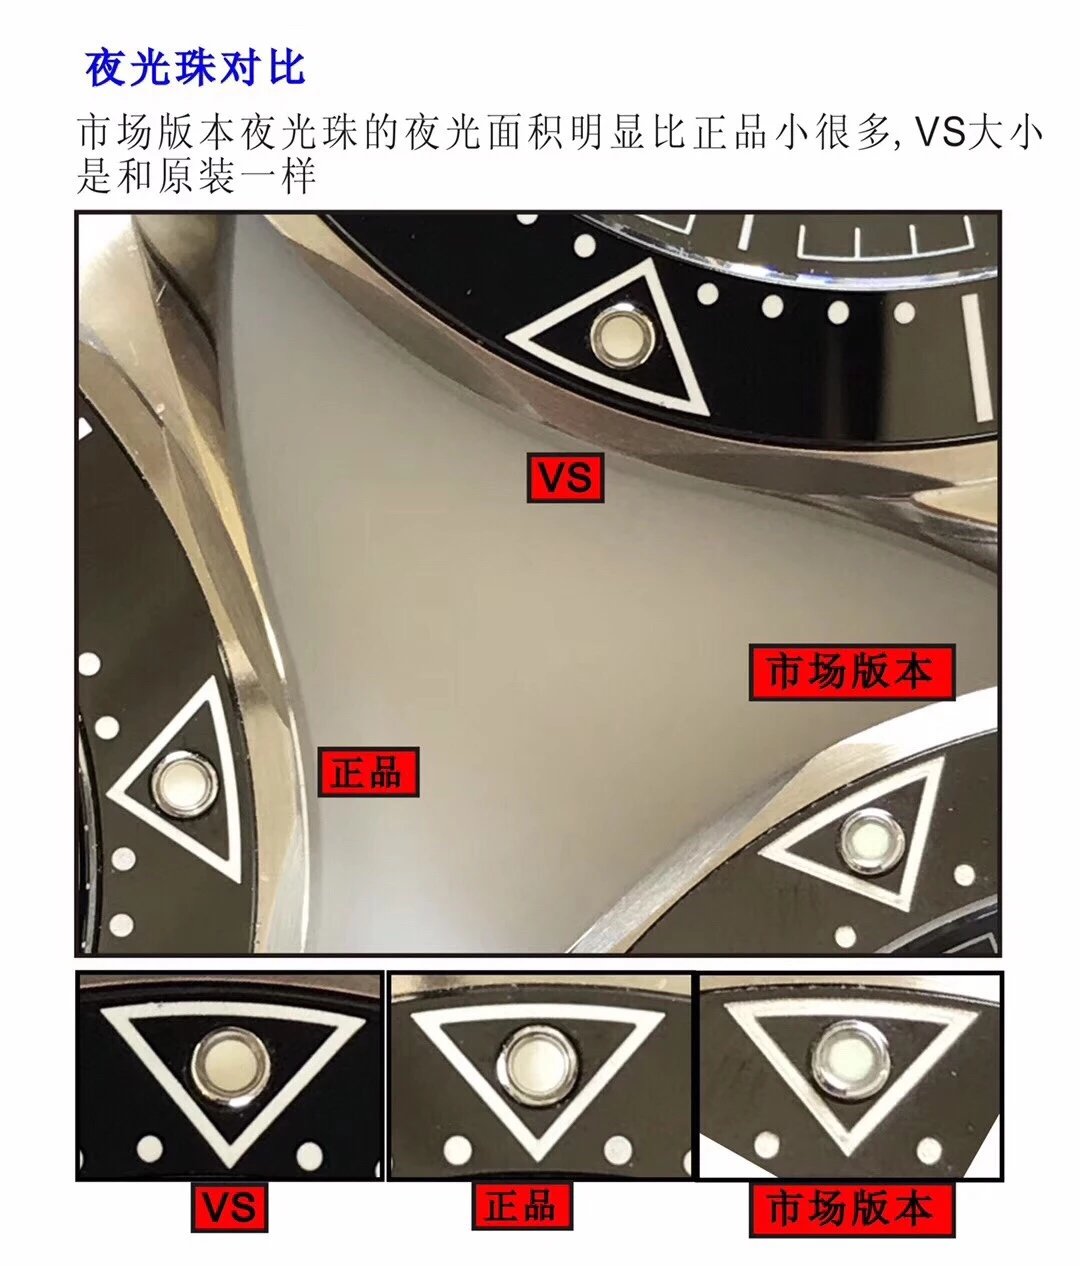 ORFactoy传奇⁠的篇章⁠。这⁠一前沿风尚的海马300米系列腕表，采用进口316L精钢打造而成⁠，表圈采用韩国高密度陶瓷⁠，饰以白色珐琅潜水刻度⁠。表盘亦以抛光陶瓷制成⁠